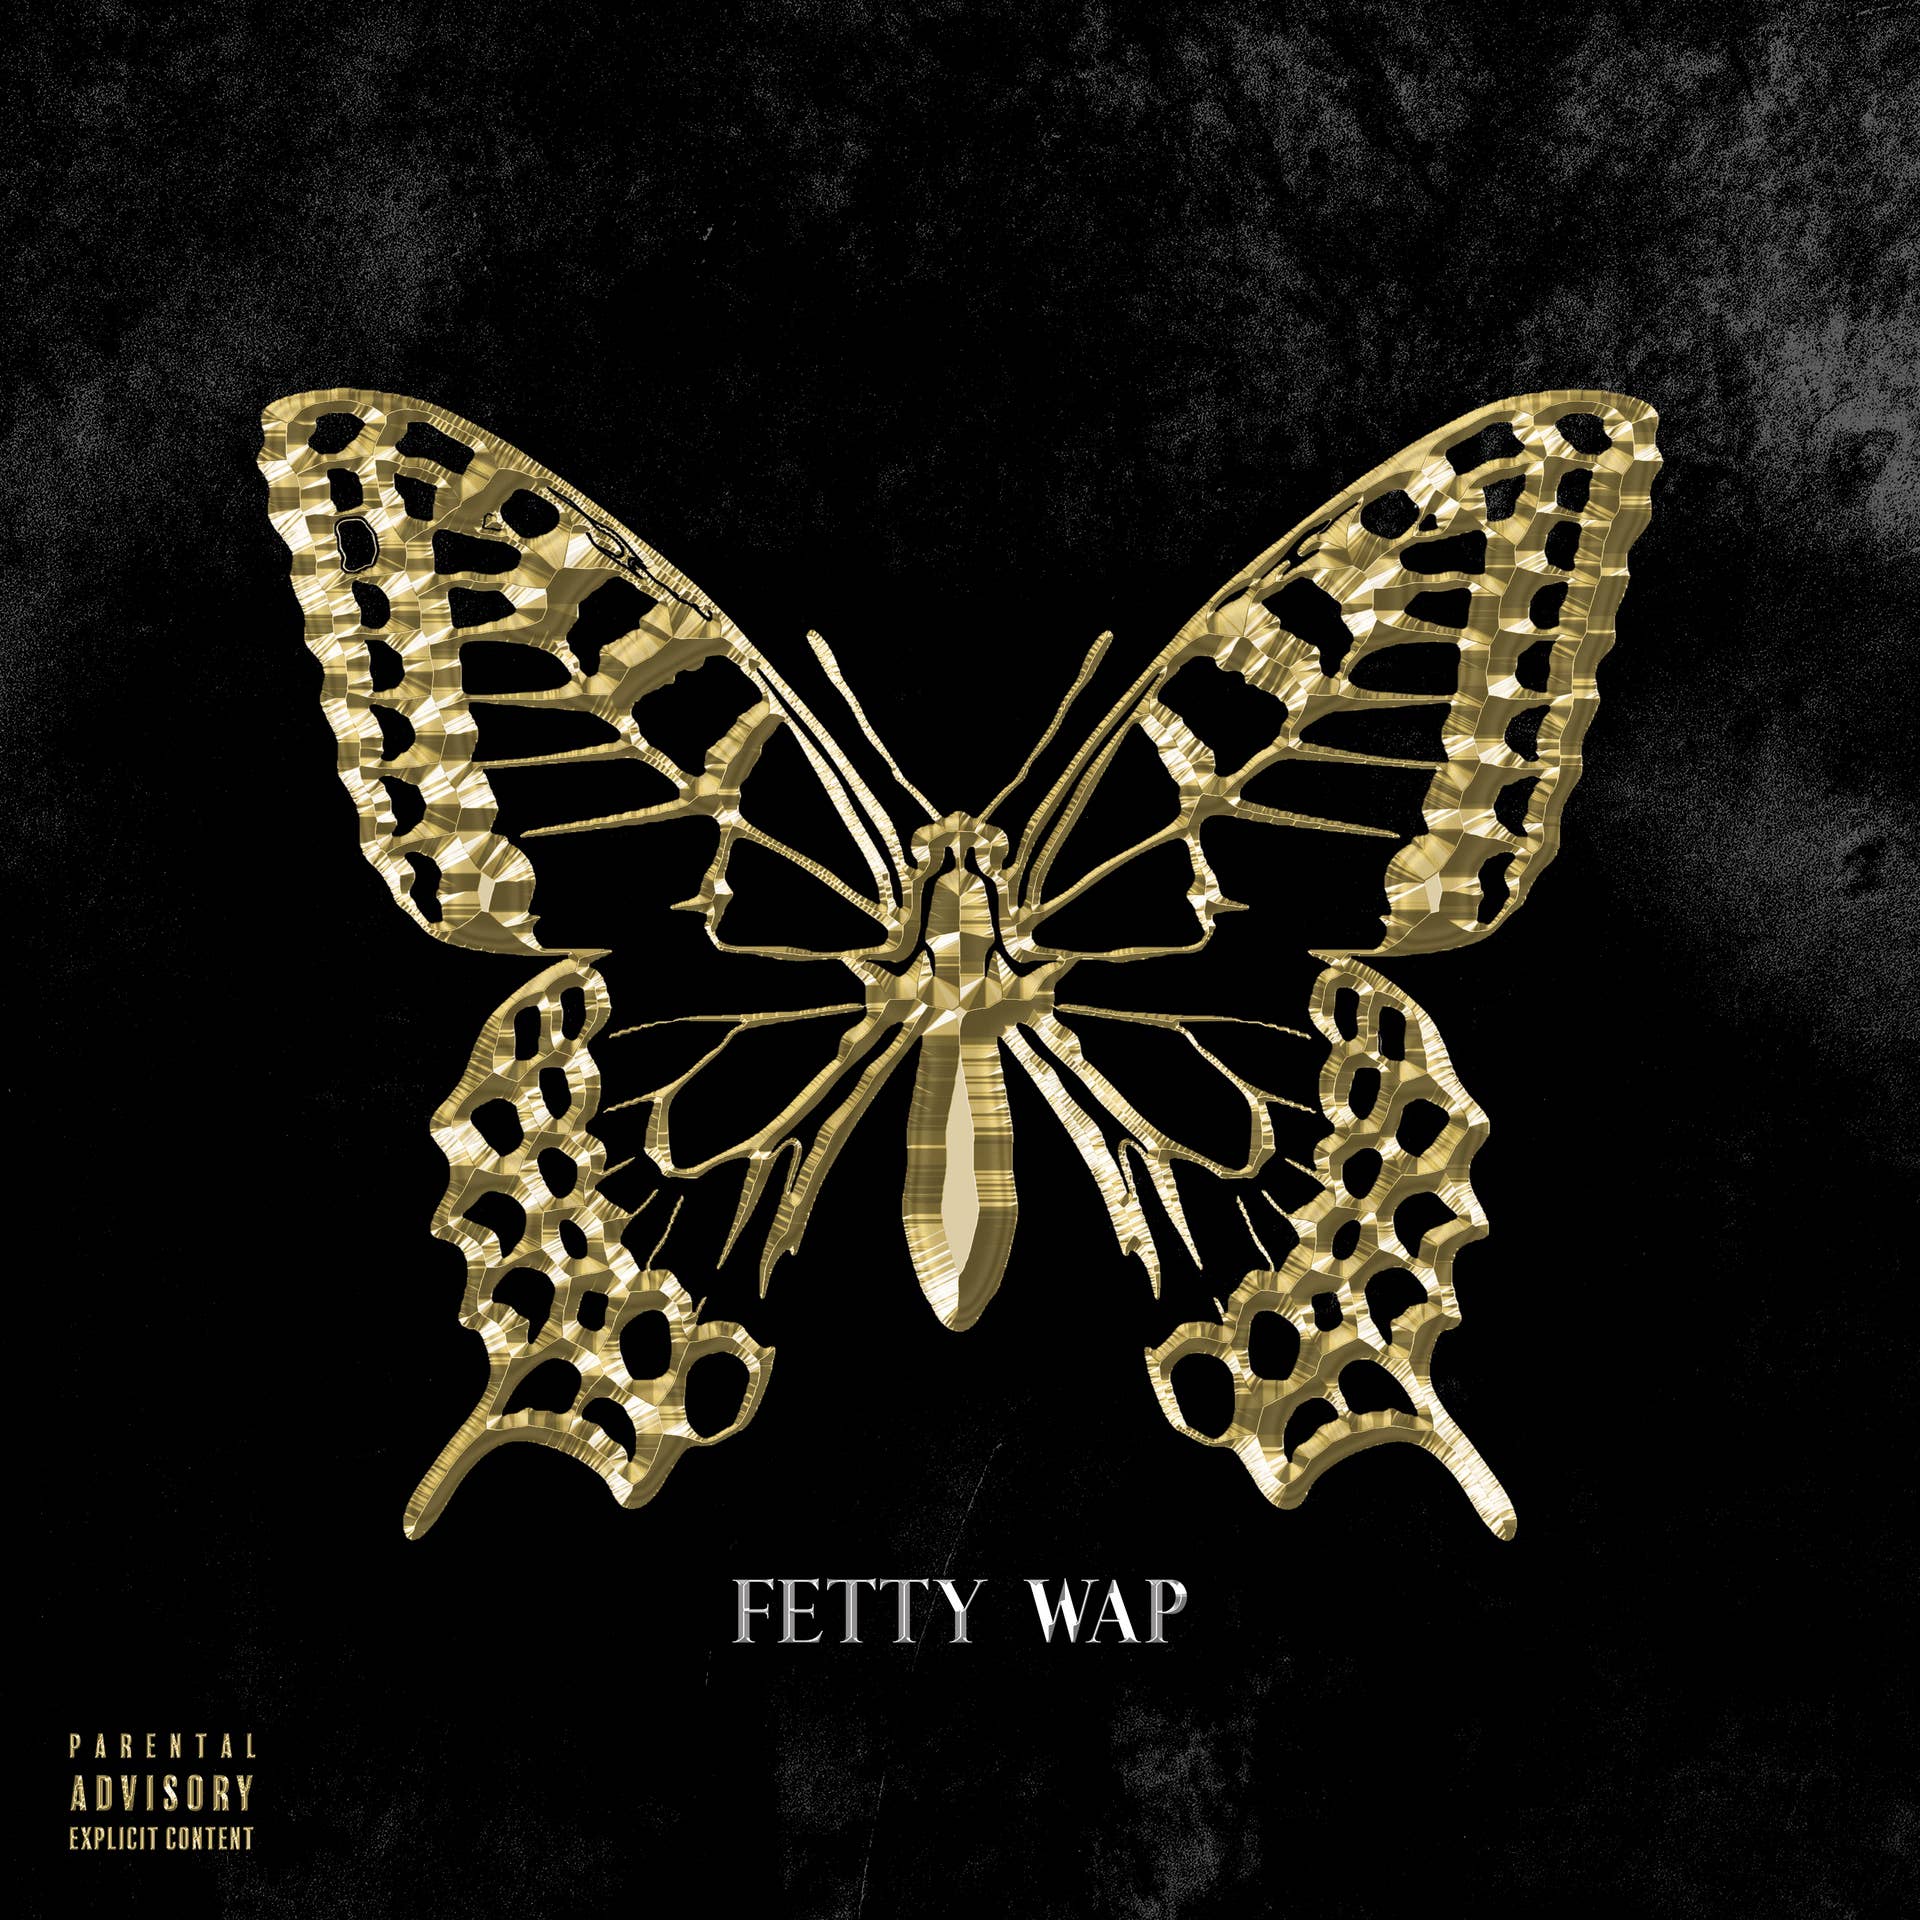 Fetty Wap Butterfly Effect cover art